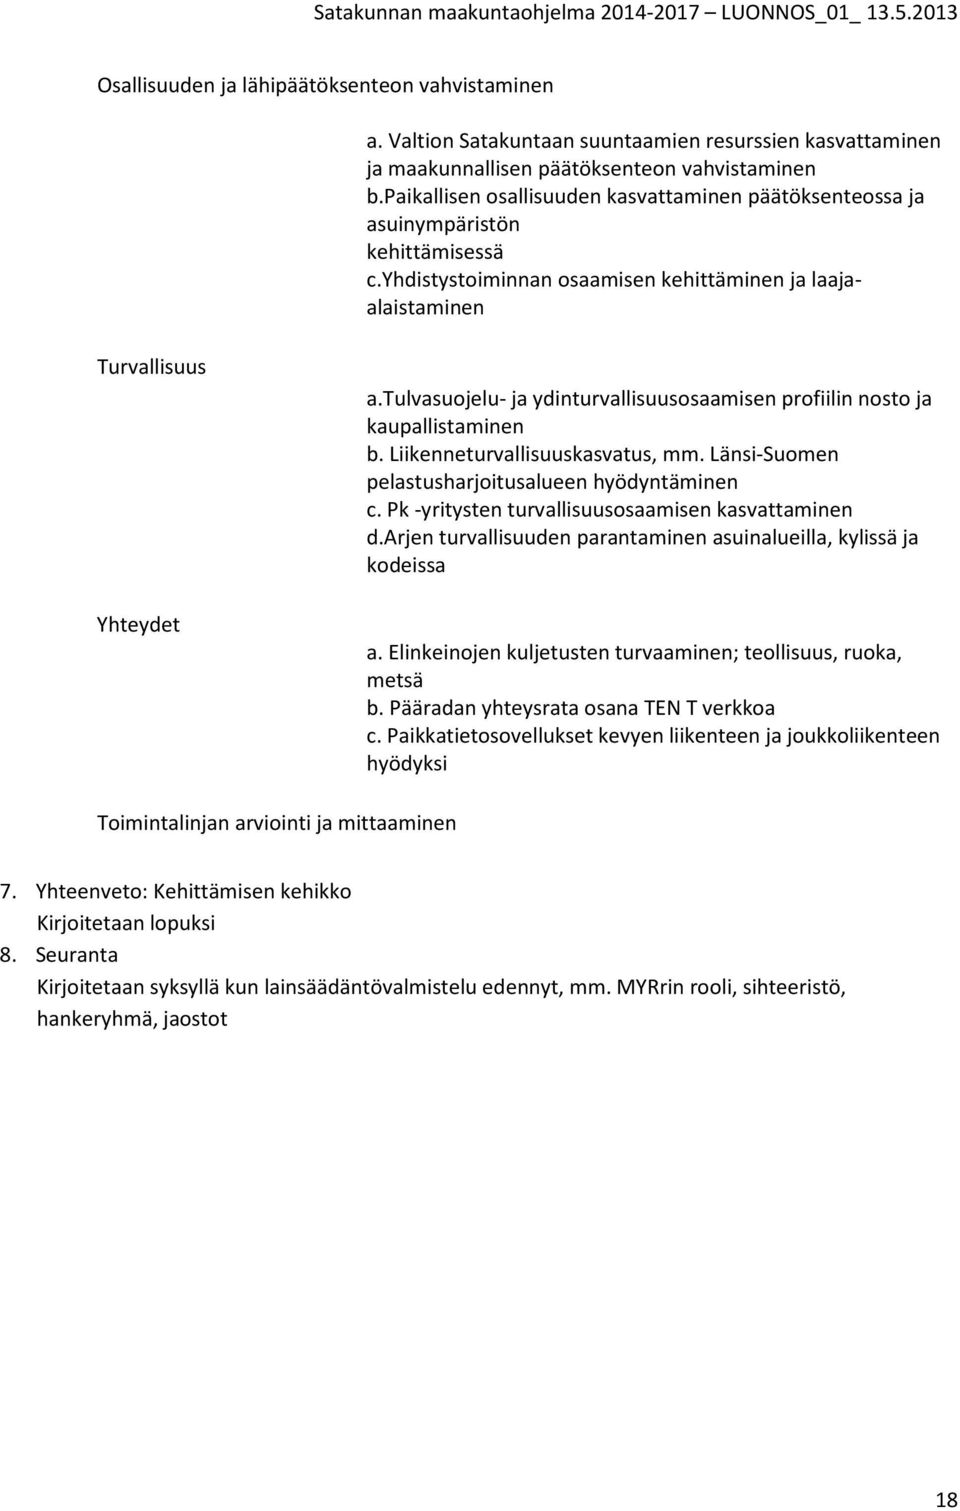 tulvasuojelu- ja ydinturvallisuusosaamisen profiilin nosto ja kaupallistaminen b. Liikenneturvallisuuskasvatus, mm. Länsi-Suomen pelastusharjoitusalueen hyödyntäminen c.